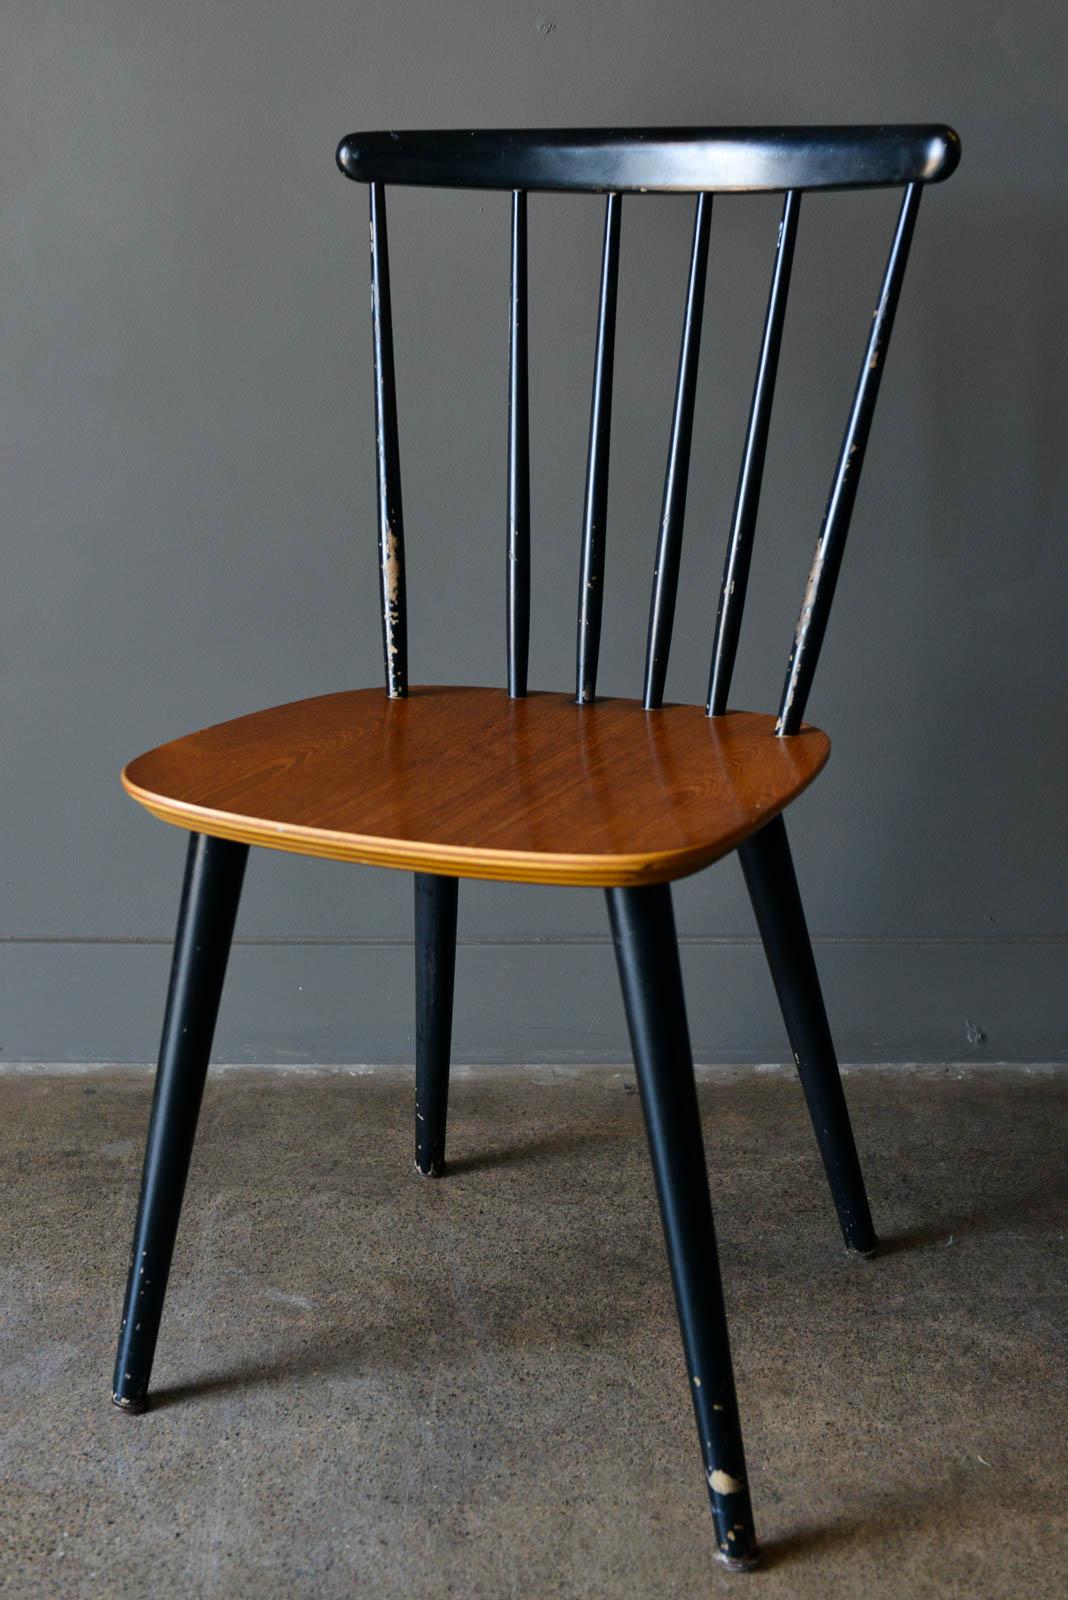 Dänischer Stuhl mit Spindellehne von Thomas Harlev für Farstrup, 1960. Einzelner Esszimmerstuhl mit altersgemäßen Gebrauchsspuren, aber in gutem Zustand. Zweifarbiger schwarzer Rahmen und Beine mit Sitz aus Teakholz. 

Maße: 18